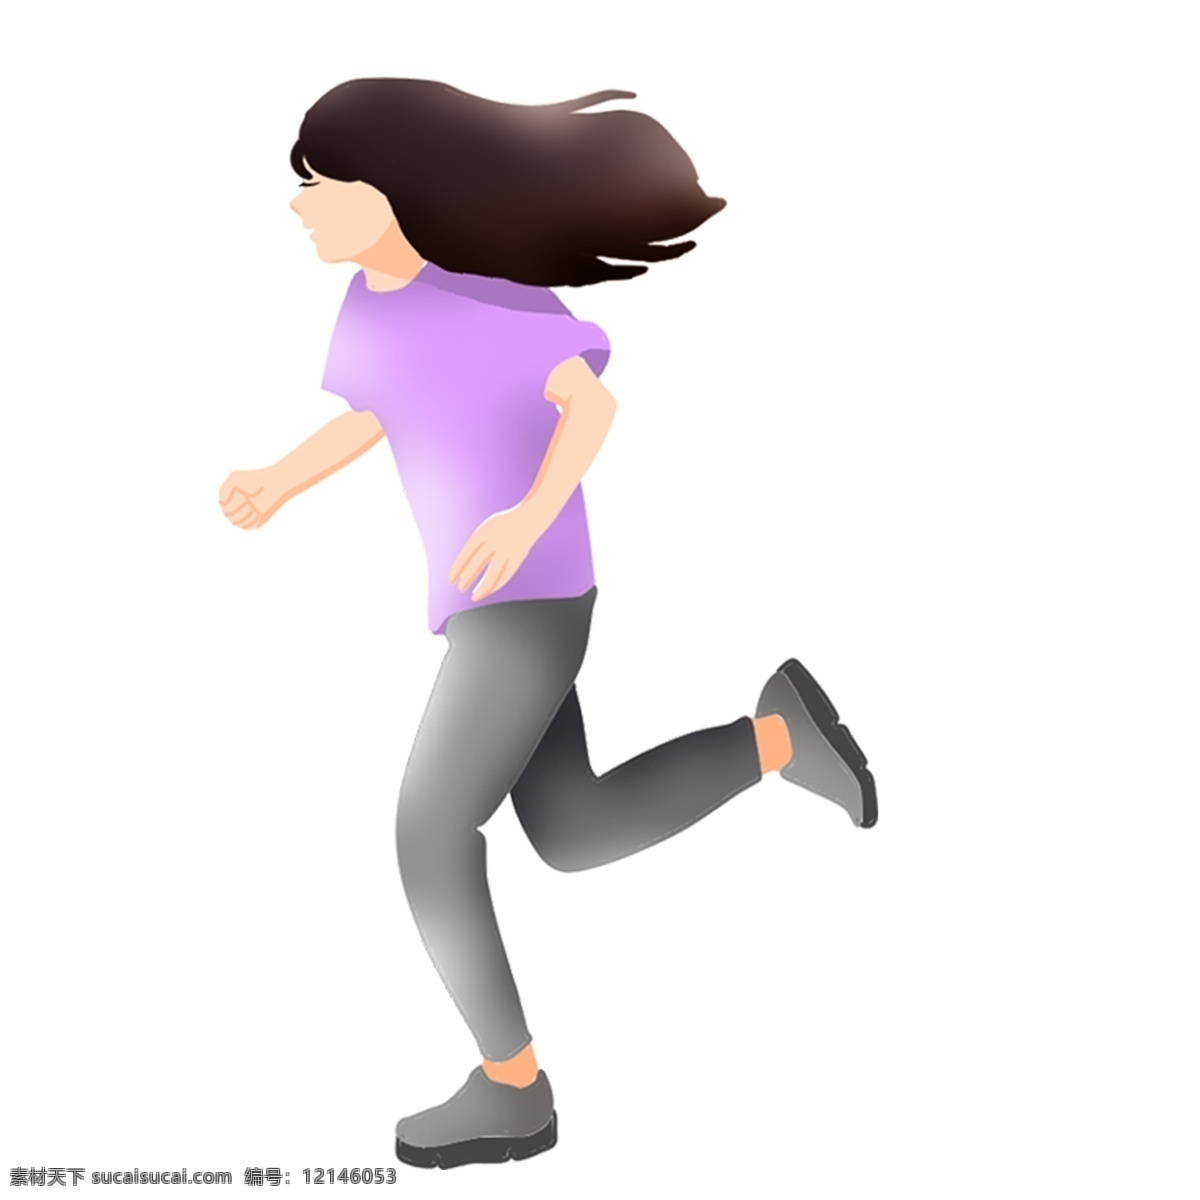 跑步 女孩 免 扣 晨练 运动 人物 动态 免扣 简图 平面图 紫色衣服女孩 少女跑步 女孩跑步